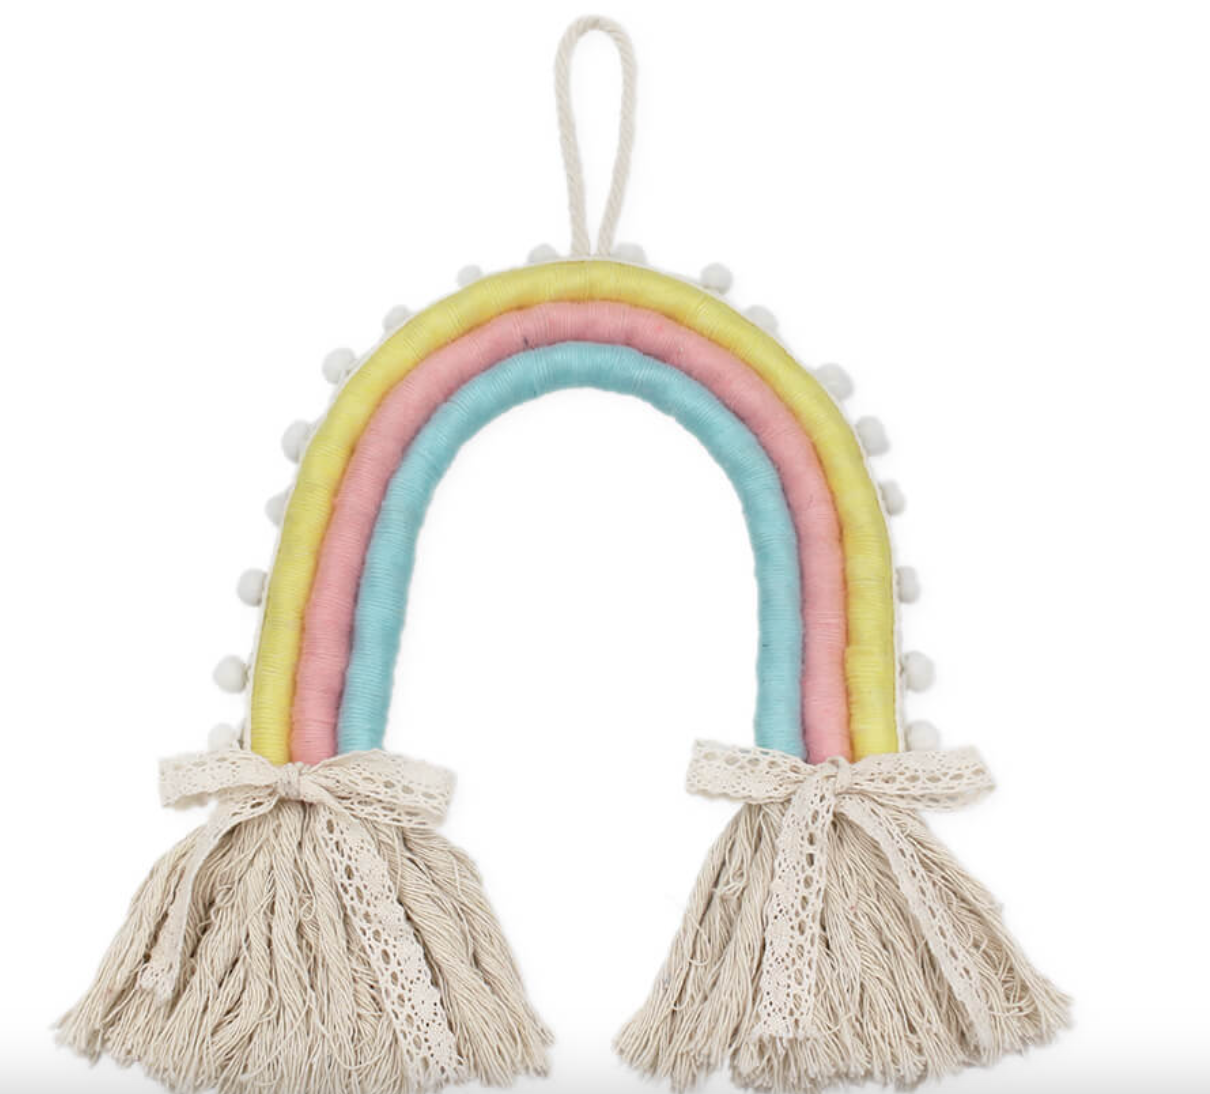 DIY wrap rope kit - 3 colour rainbow